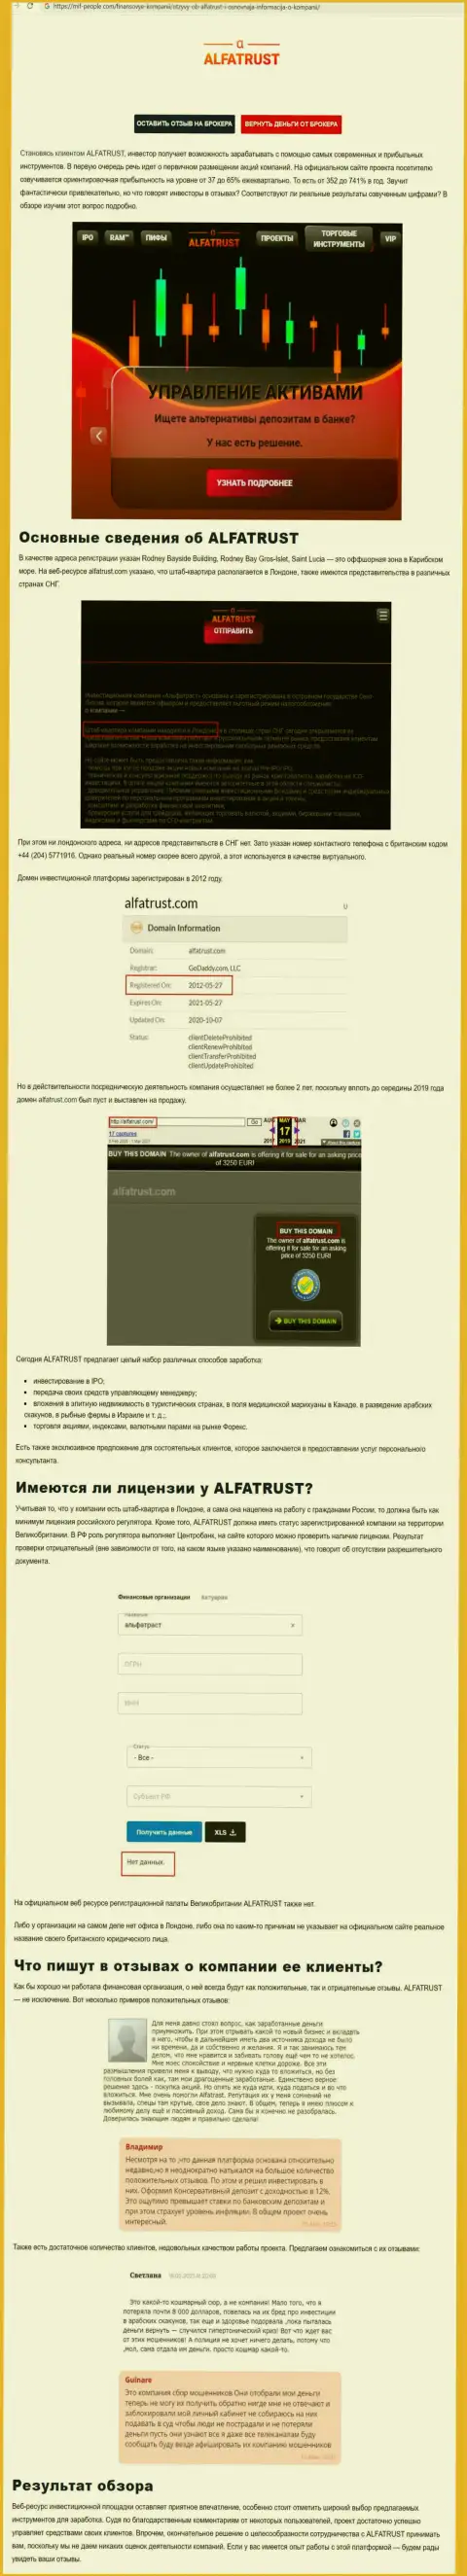 Интернет-ресурс mif-people com показал информационный материал о FOREX дилинговой компании AlfaTrust Com